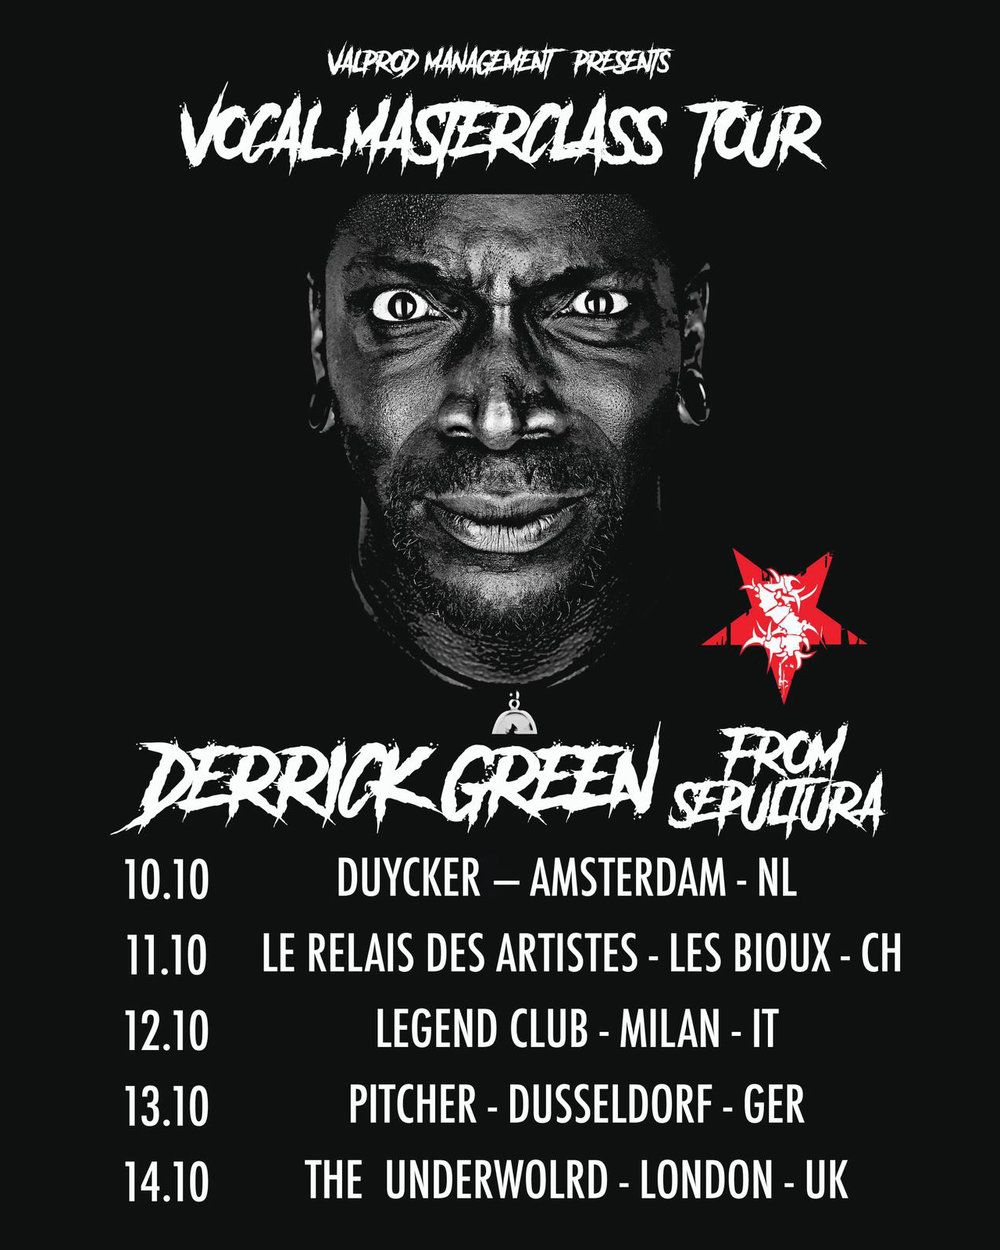 Derrick Green kündigt Vocal-Masterclass-Tour in Europa an